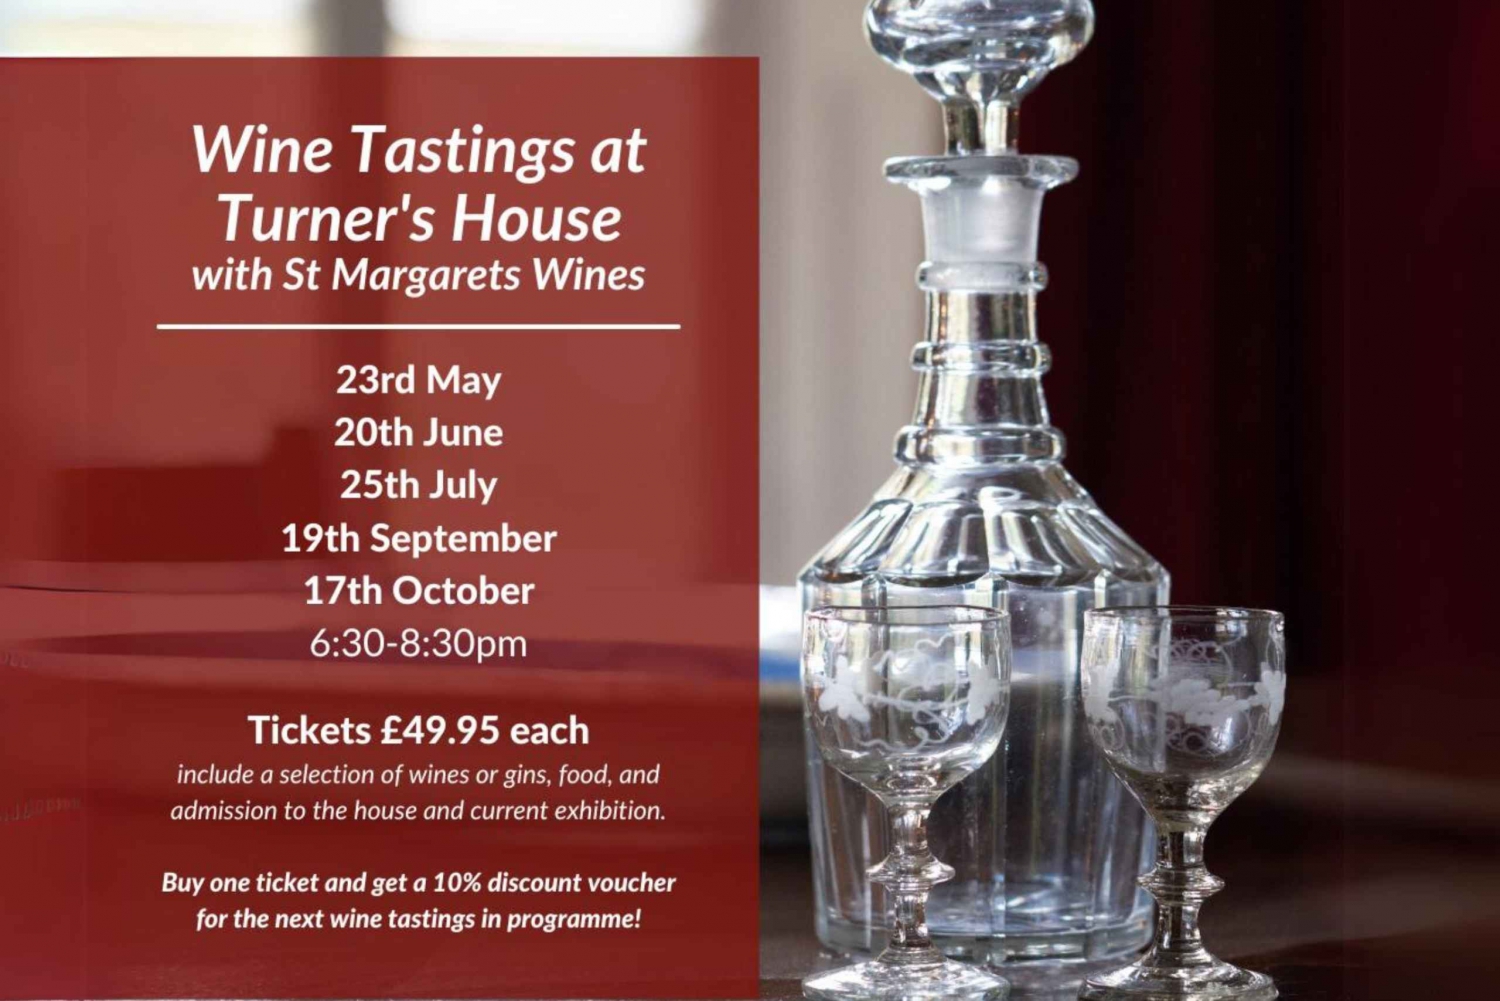 Londen: Wijnproeverij Turner's House met St Margarets Wijn